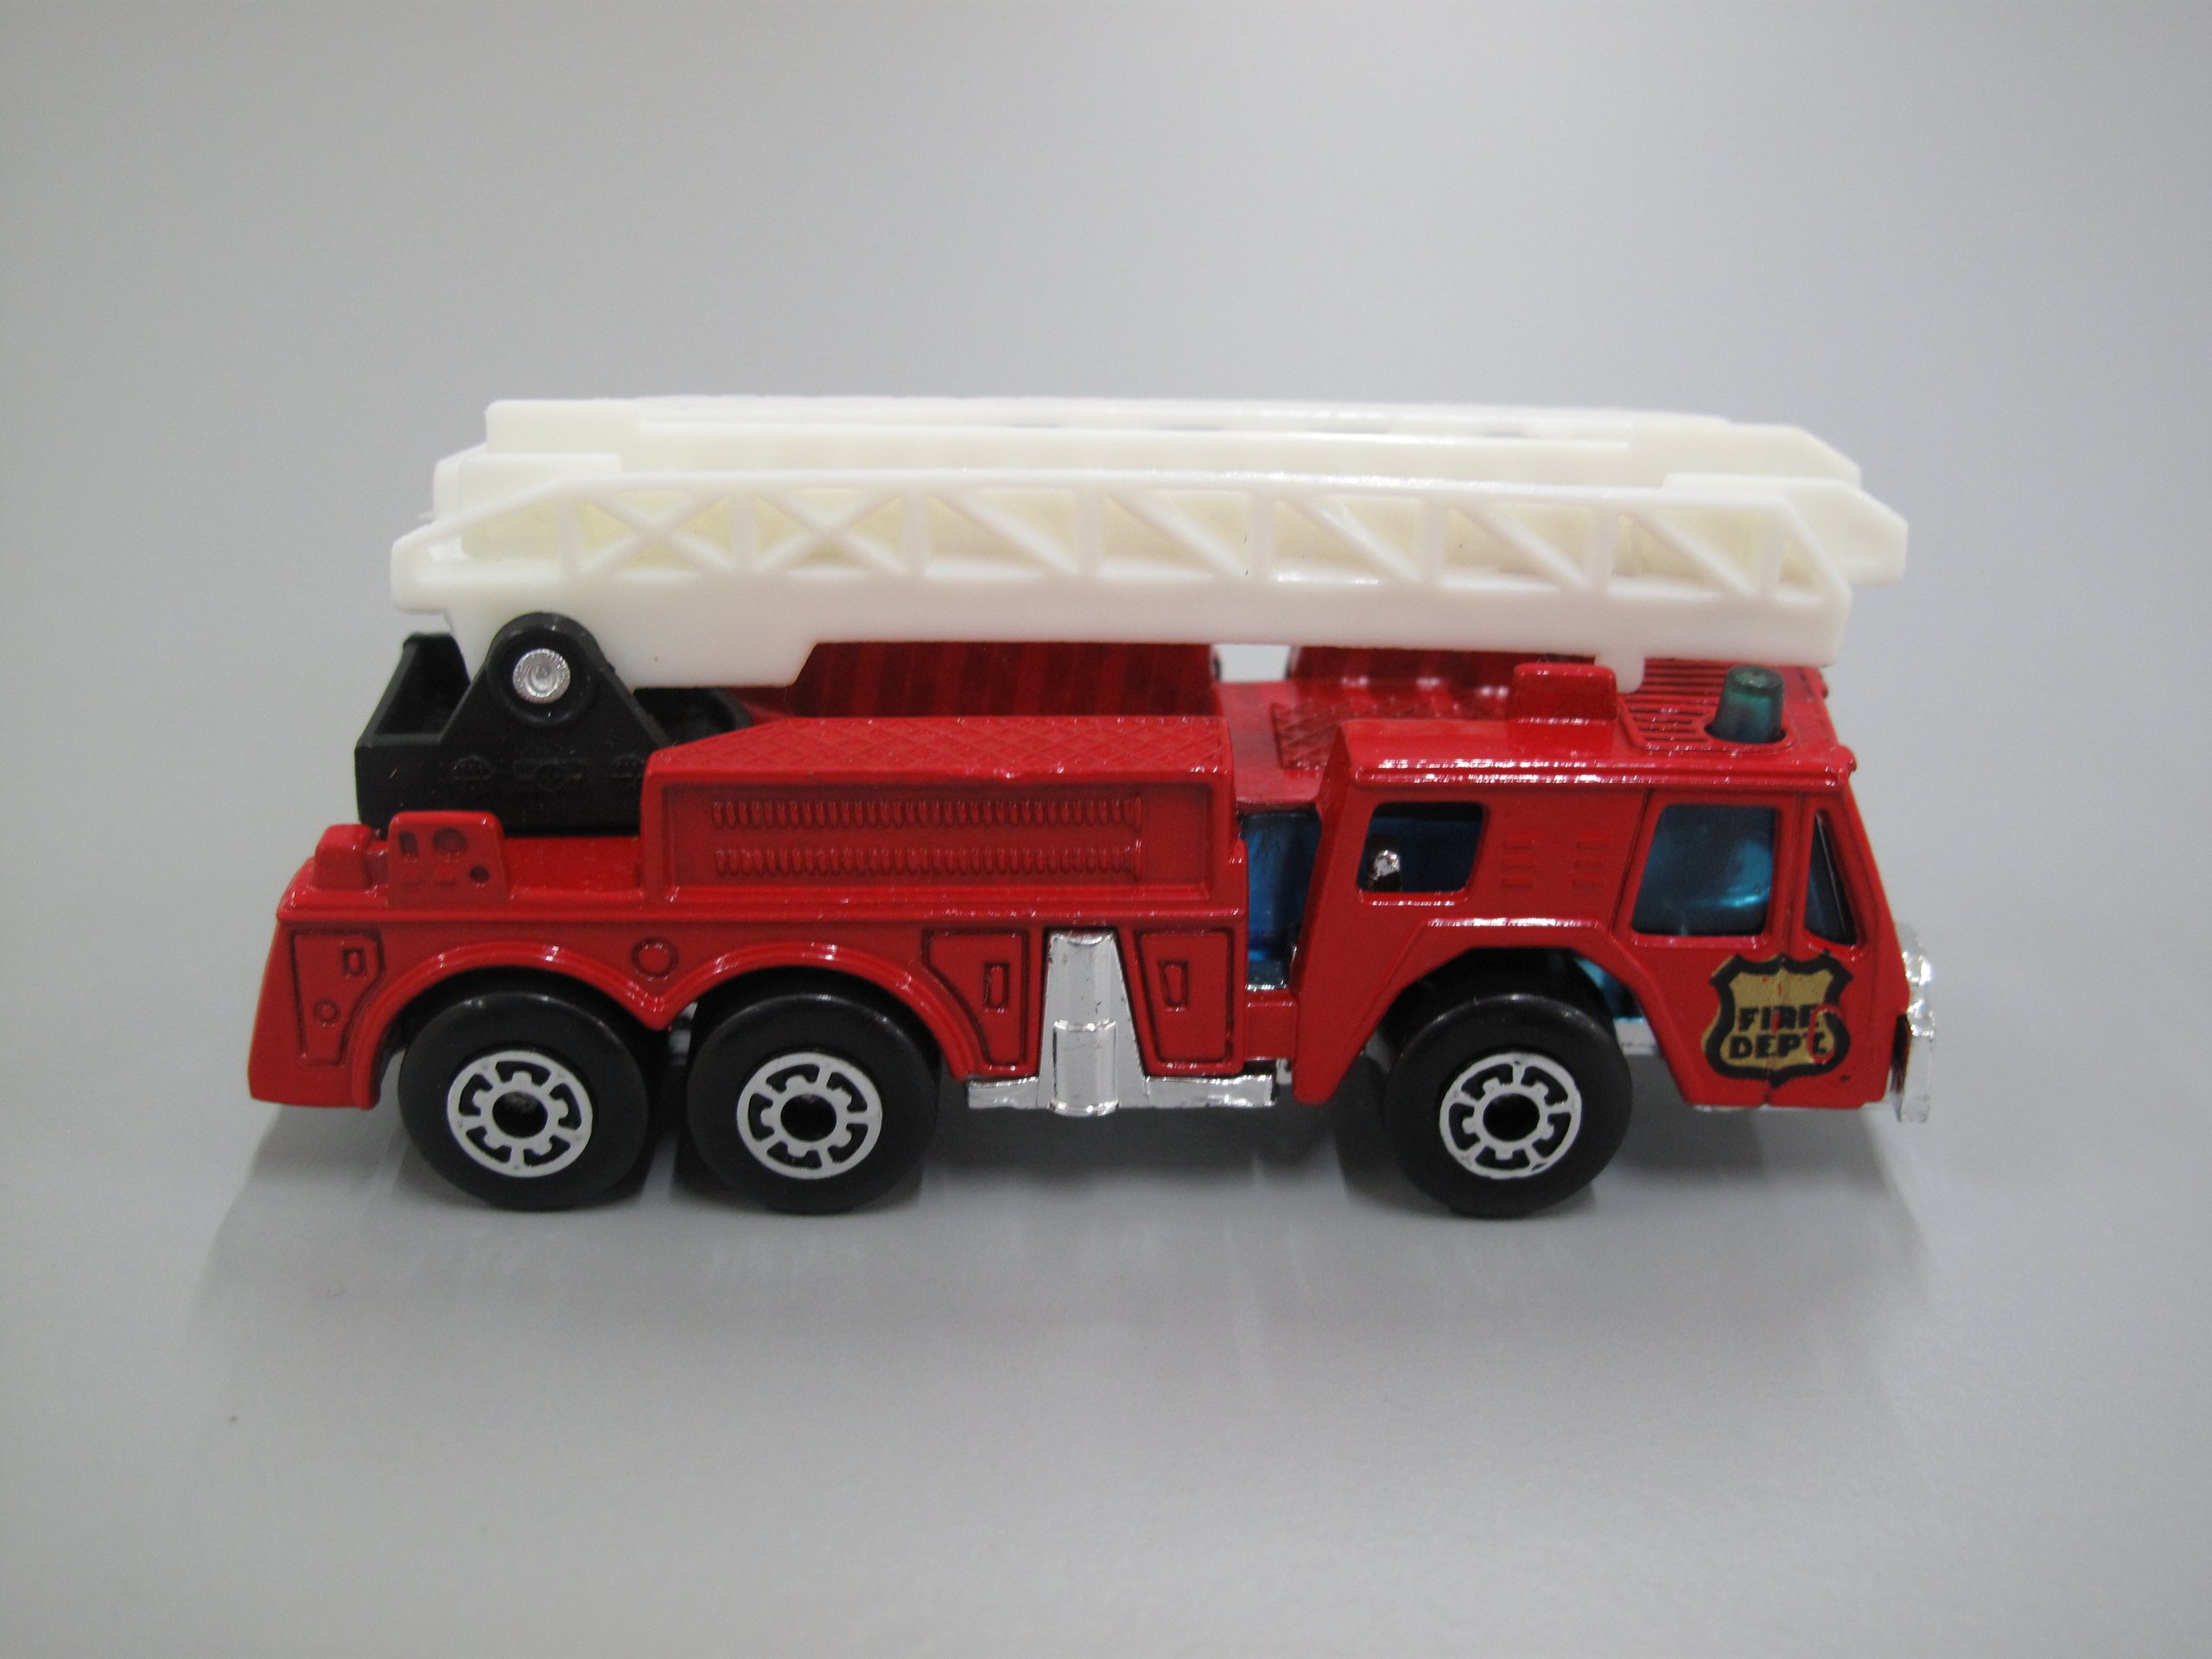 Matchbox fire engine 'Fire Dept'